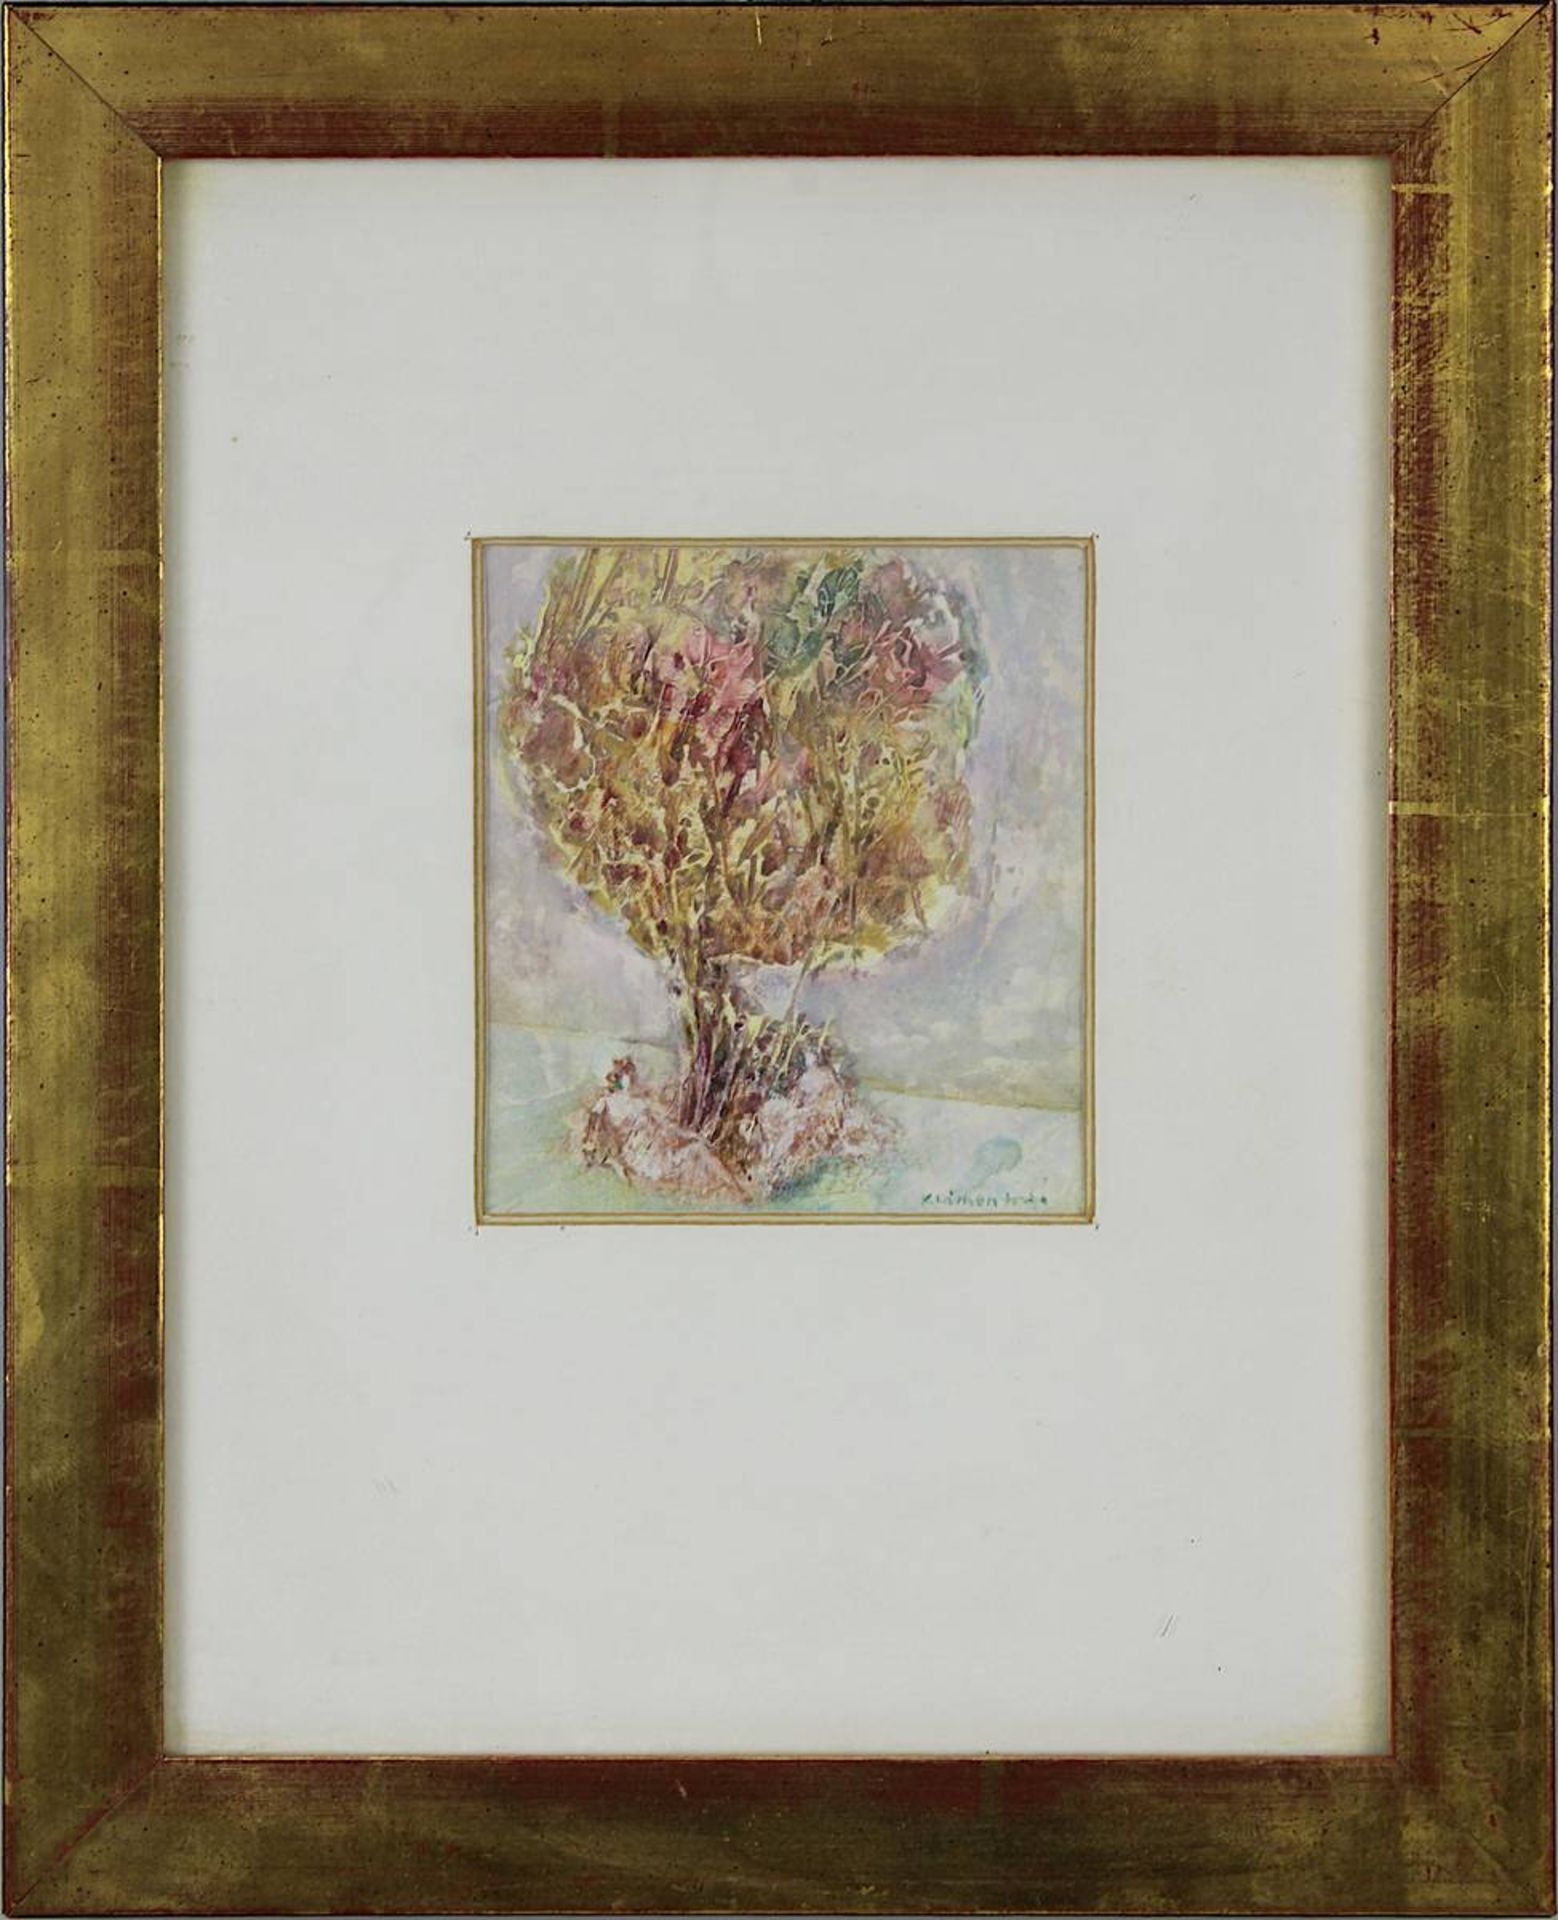 Klimentová, Jirina (Prag 1932 - 1997 Prag), zwei Arbeiten, jeweils vegetabile Kompositionen in - Bild 2 aus 3